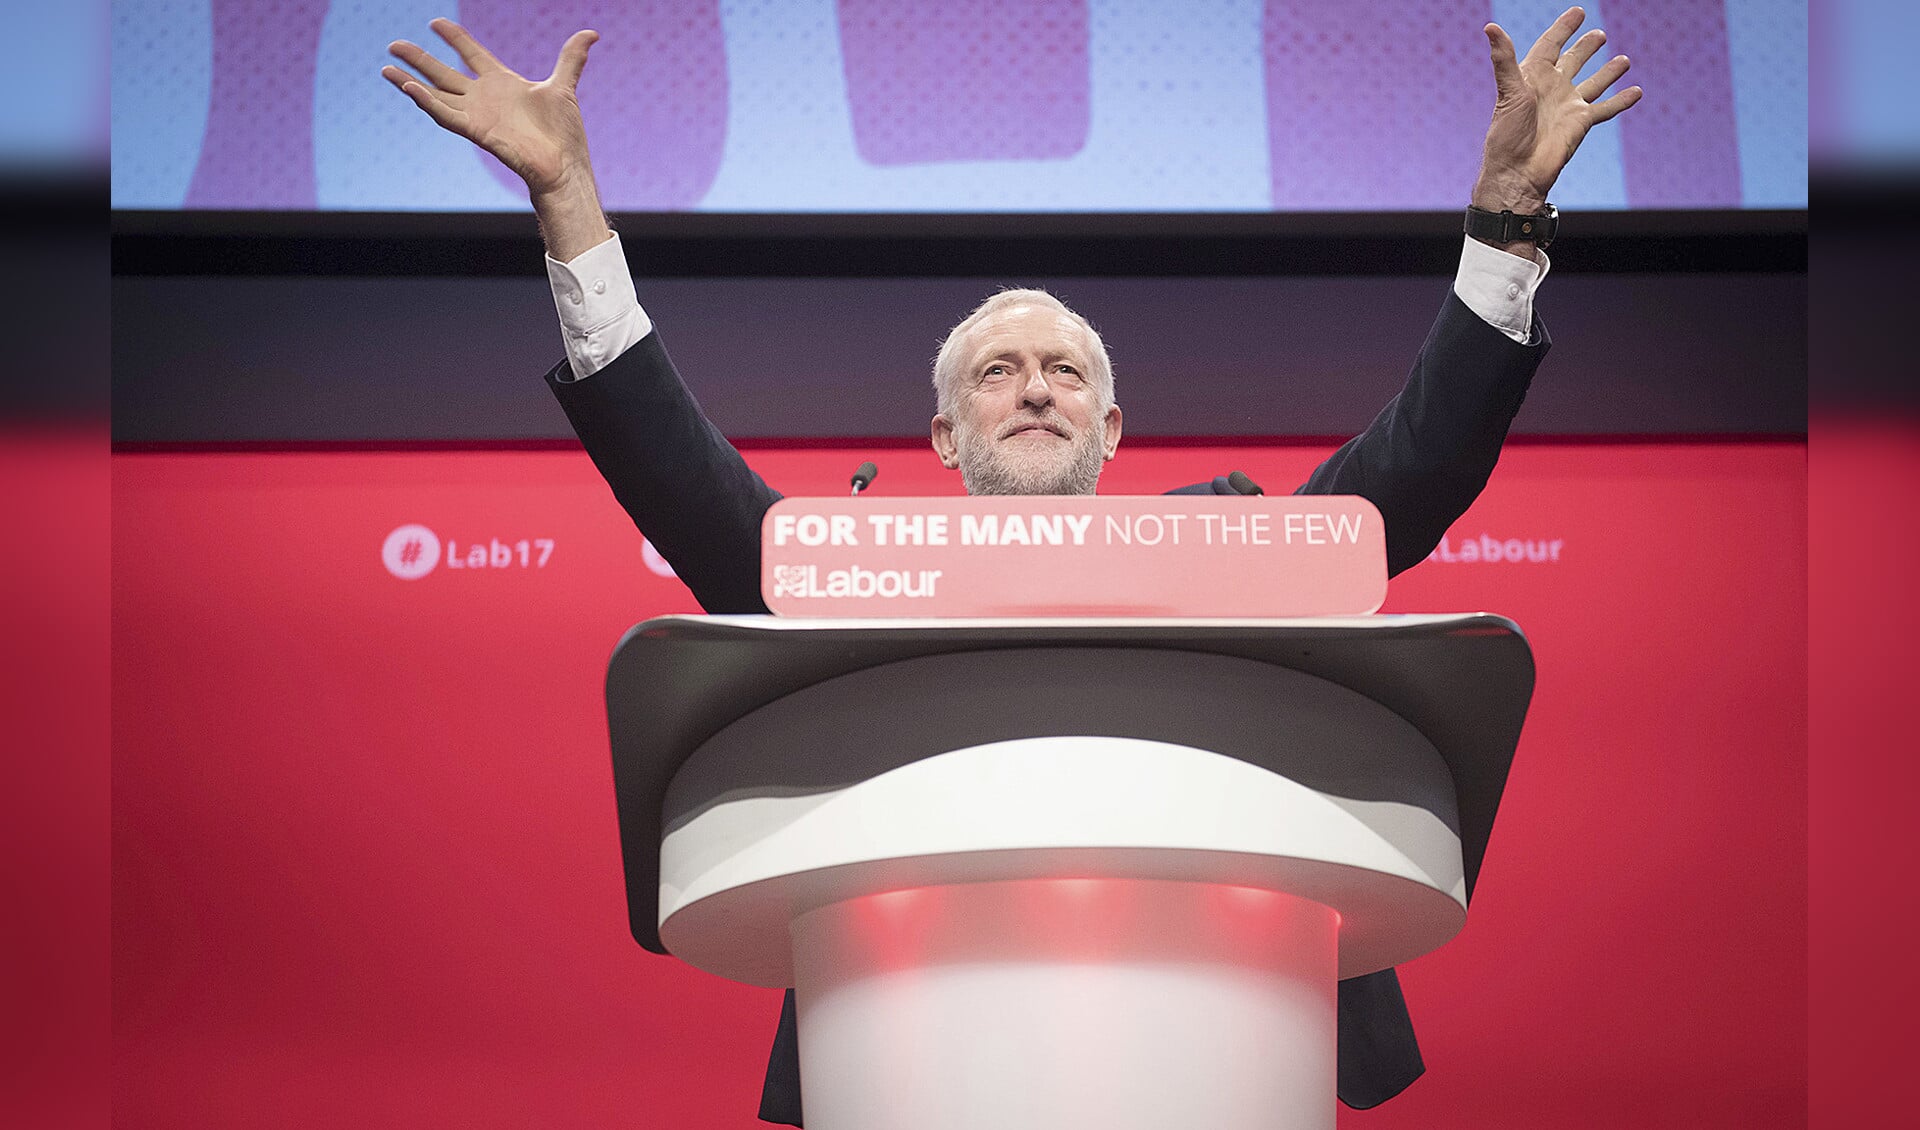 De Britse Labourleider Jeremy Corbyn heeft in zijn speech tijdens het jaarlijkse partijcongres het antisemitische sentiment binnen zijn partij scherp veroordeeld.